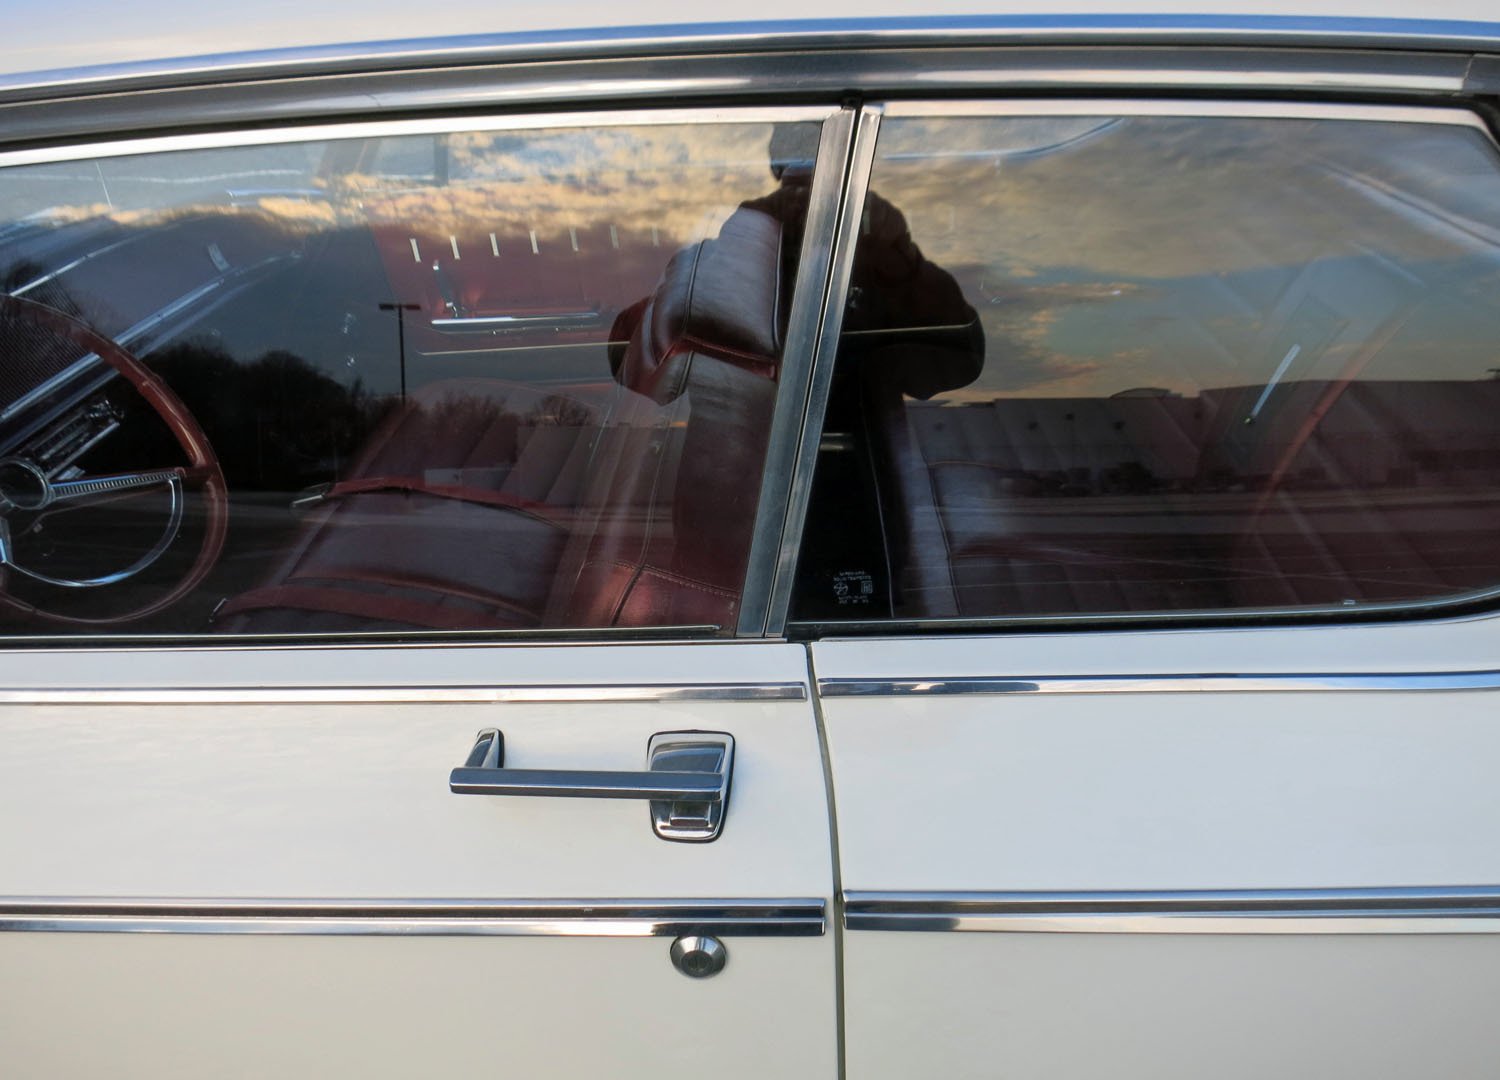 1964 Chrysler Newport